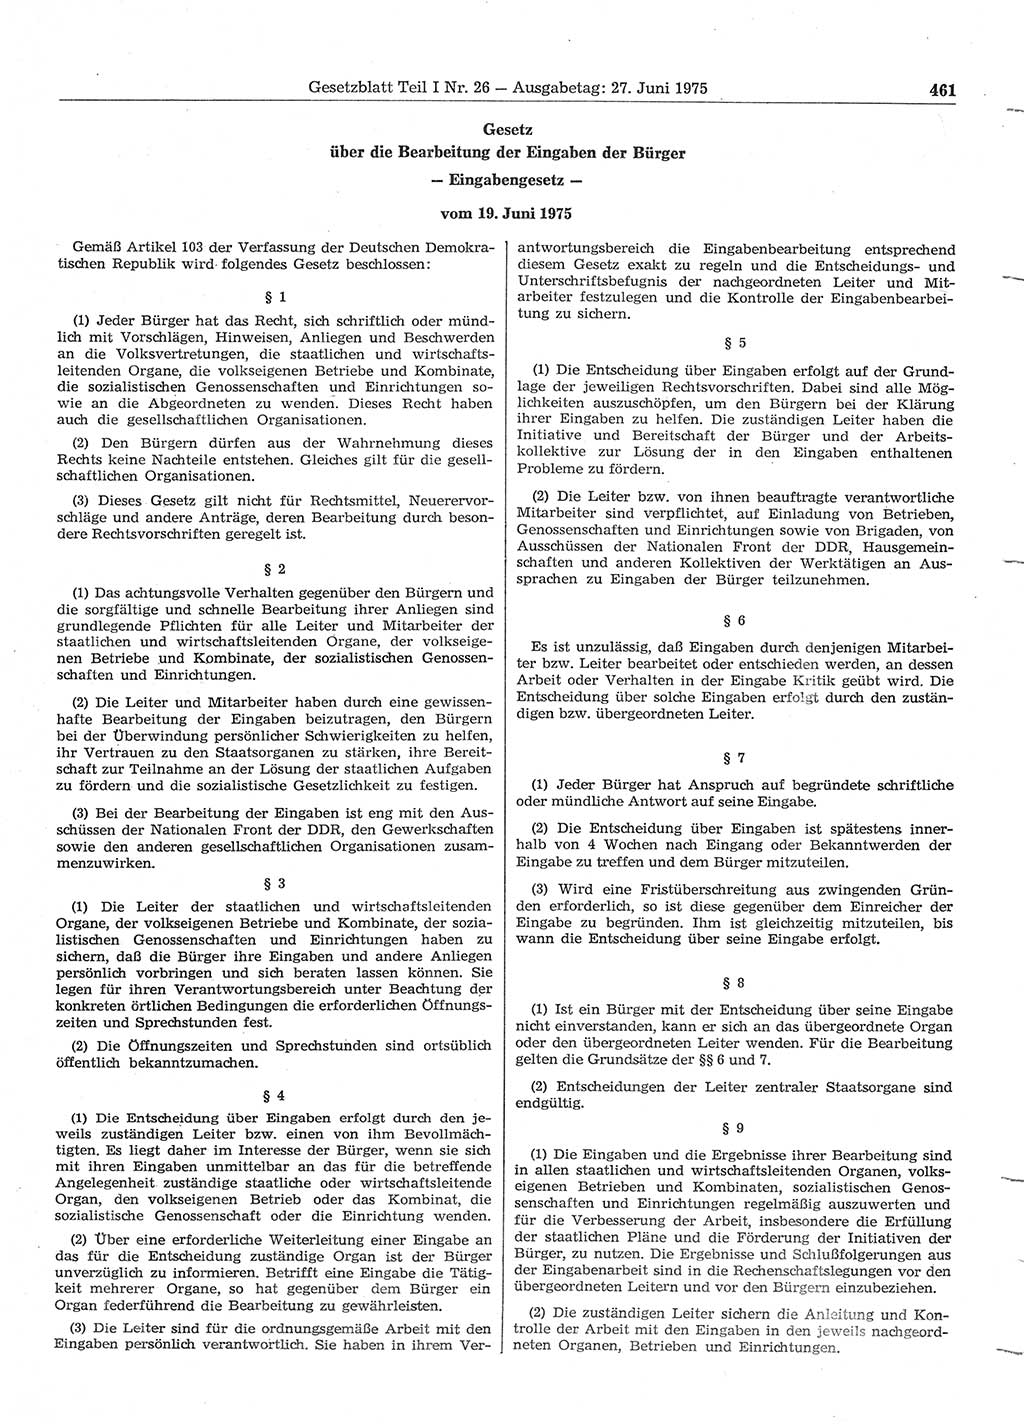 Gesetzblatt (GBl.) der Deutschen Demokratischen Republik (DDR) Teil Ⅰ 1975, Seite 461 (GBl. DDR Ⅰ 1975, S. 461)